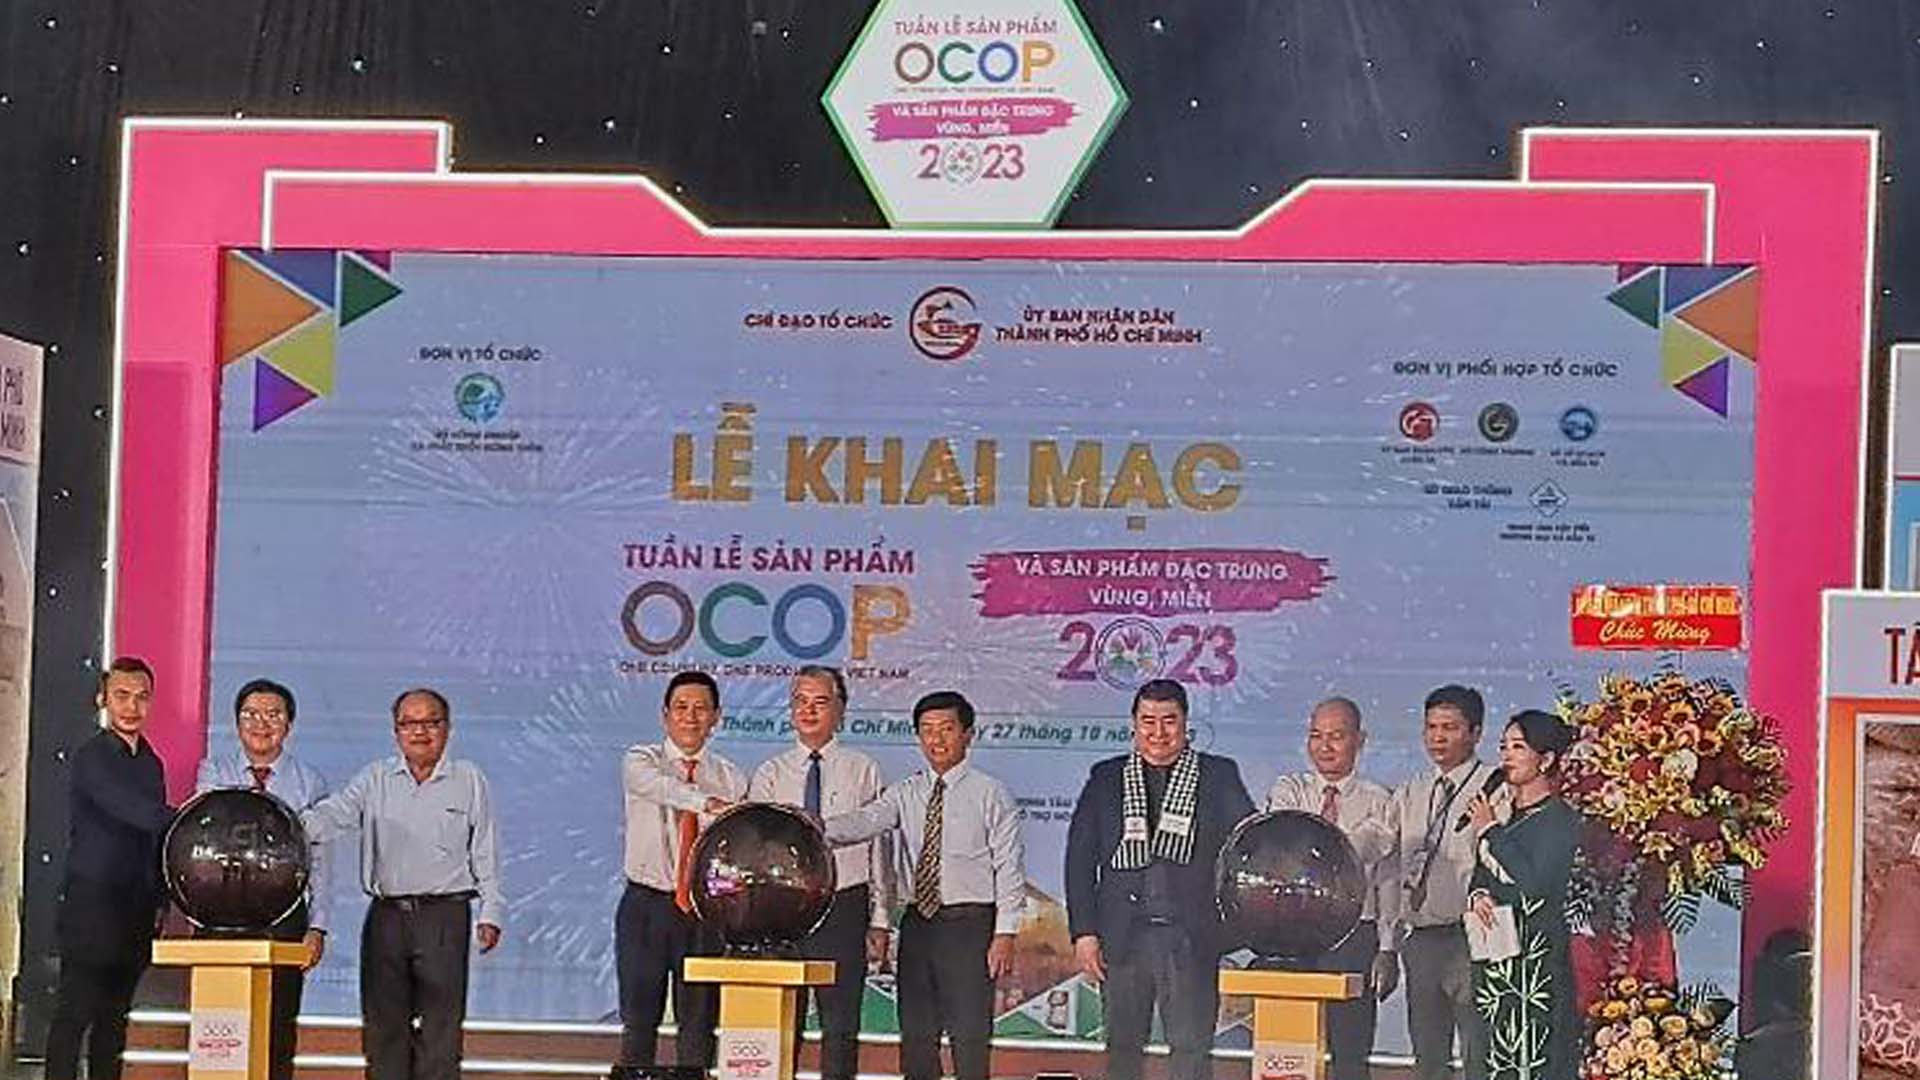 TP Hồ Chí Minh: Khai mạc tuần lễ sản phẩm OCOP và đặc trưng vùng miền 2023